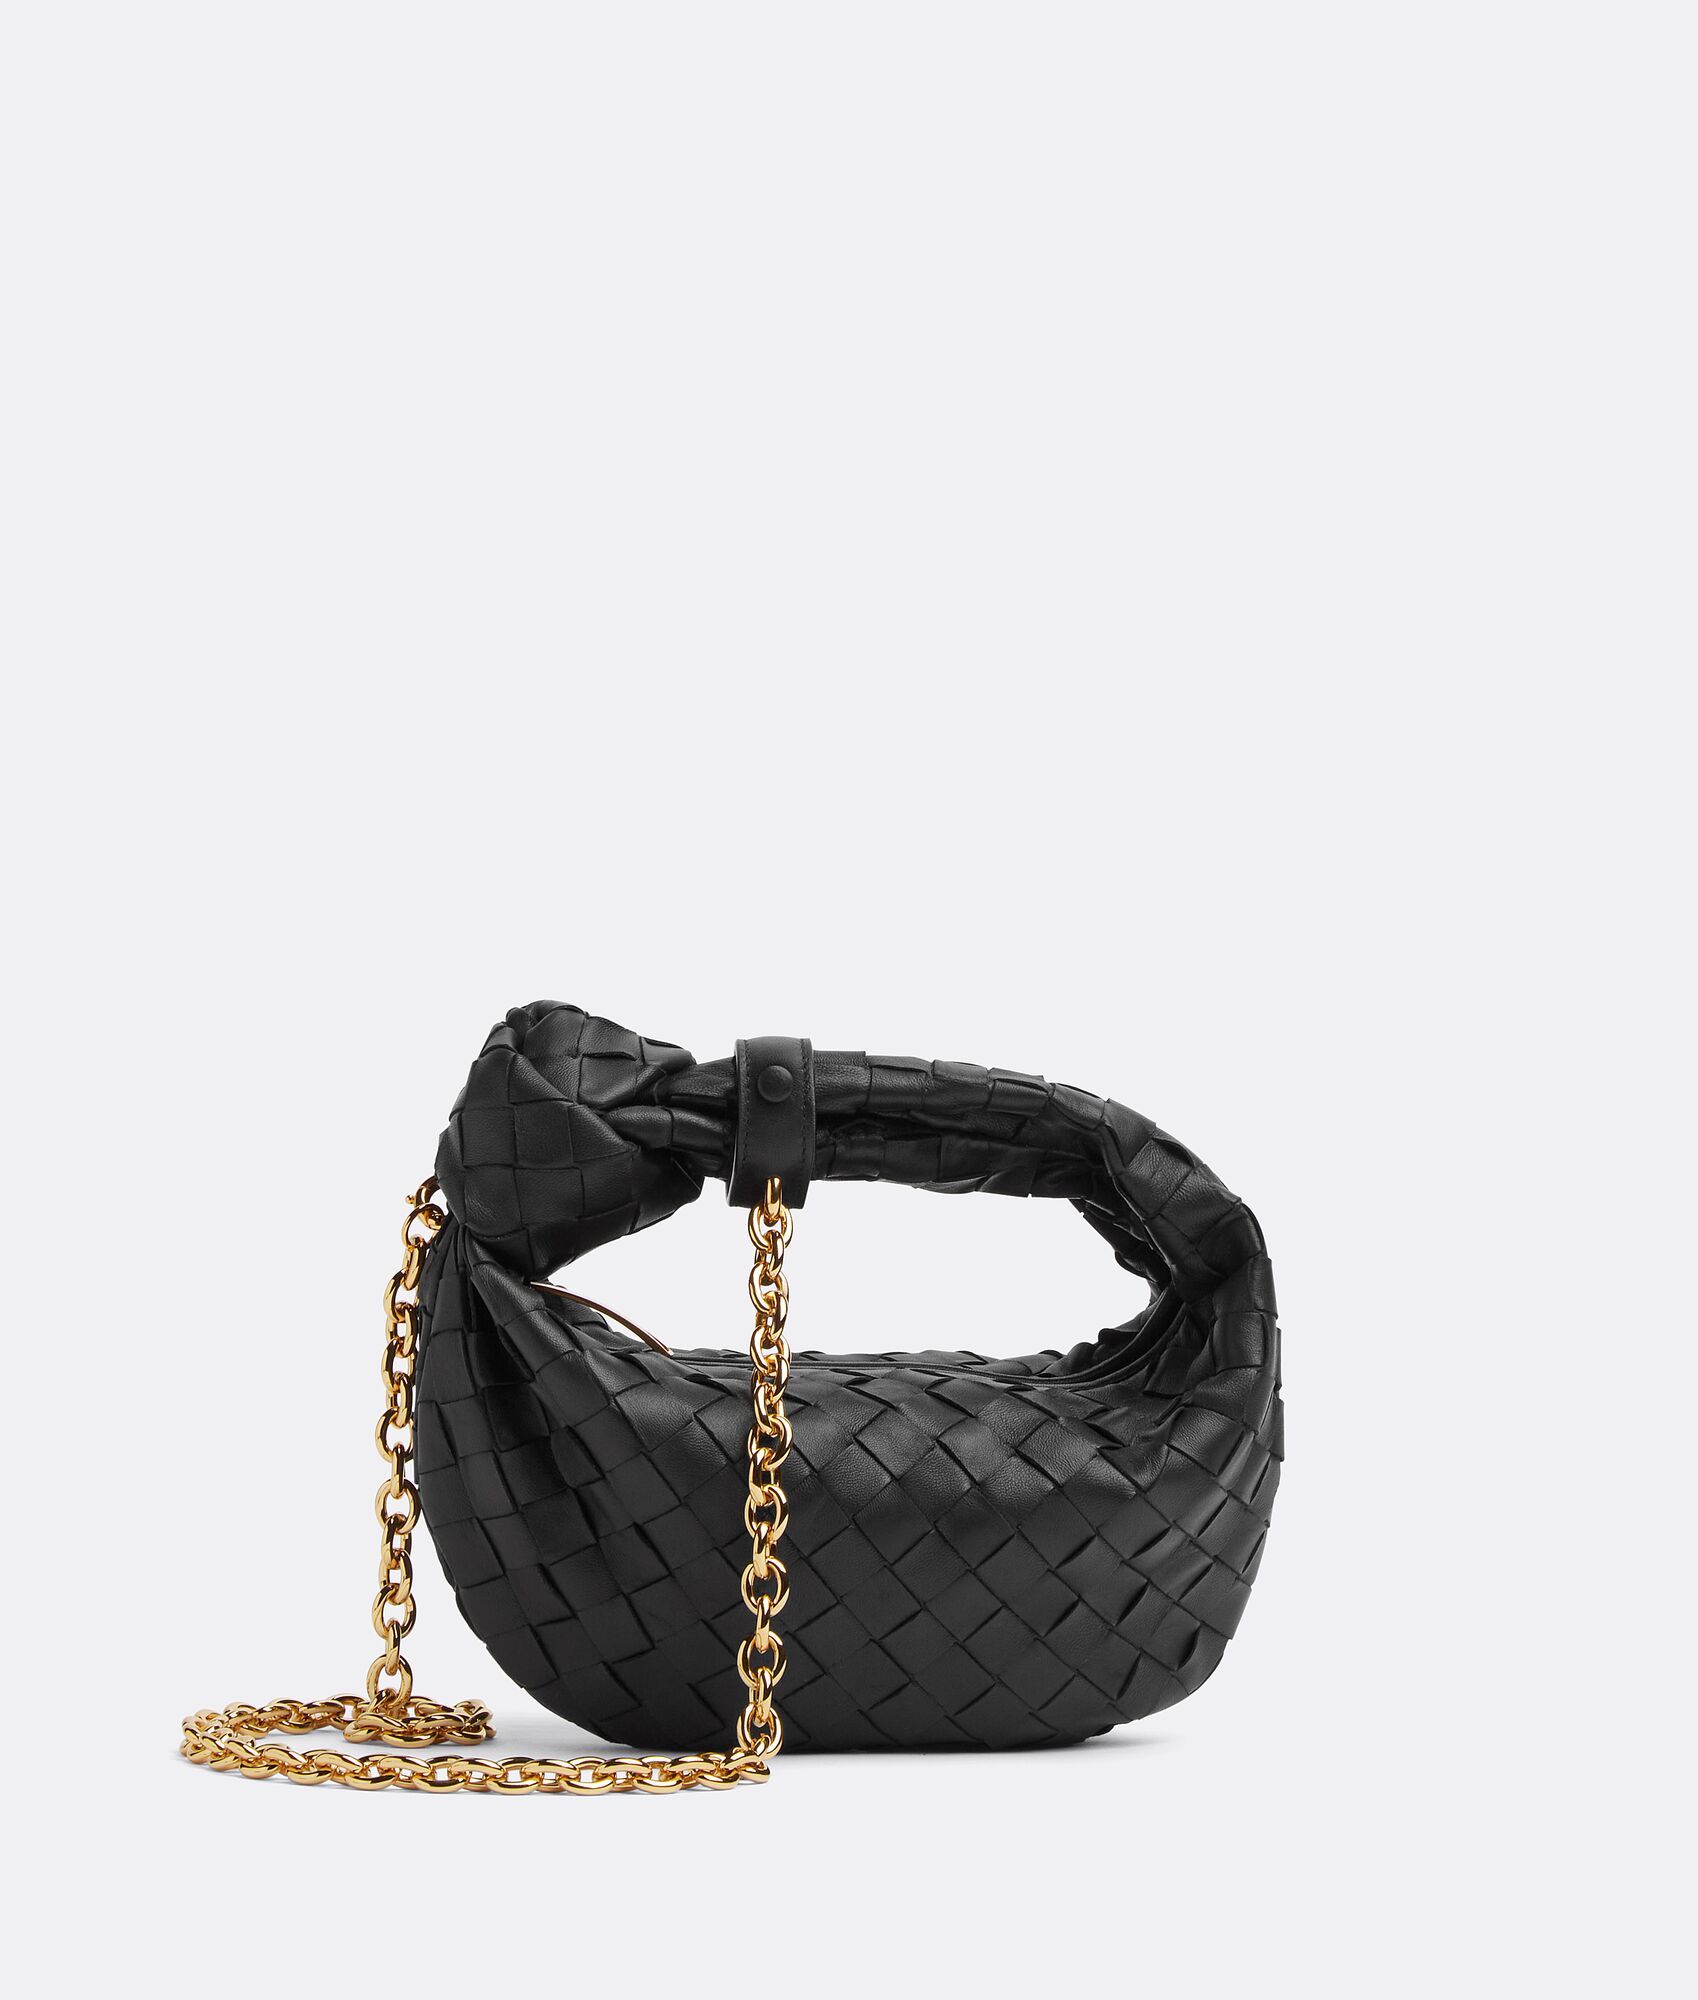 50代女性の普段使いにおすすめなカジュアルに使えるハイブランドバッグは、ボッテガ・ヴェネタのミニ ジョディ